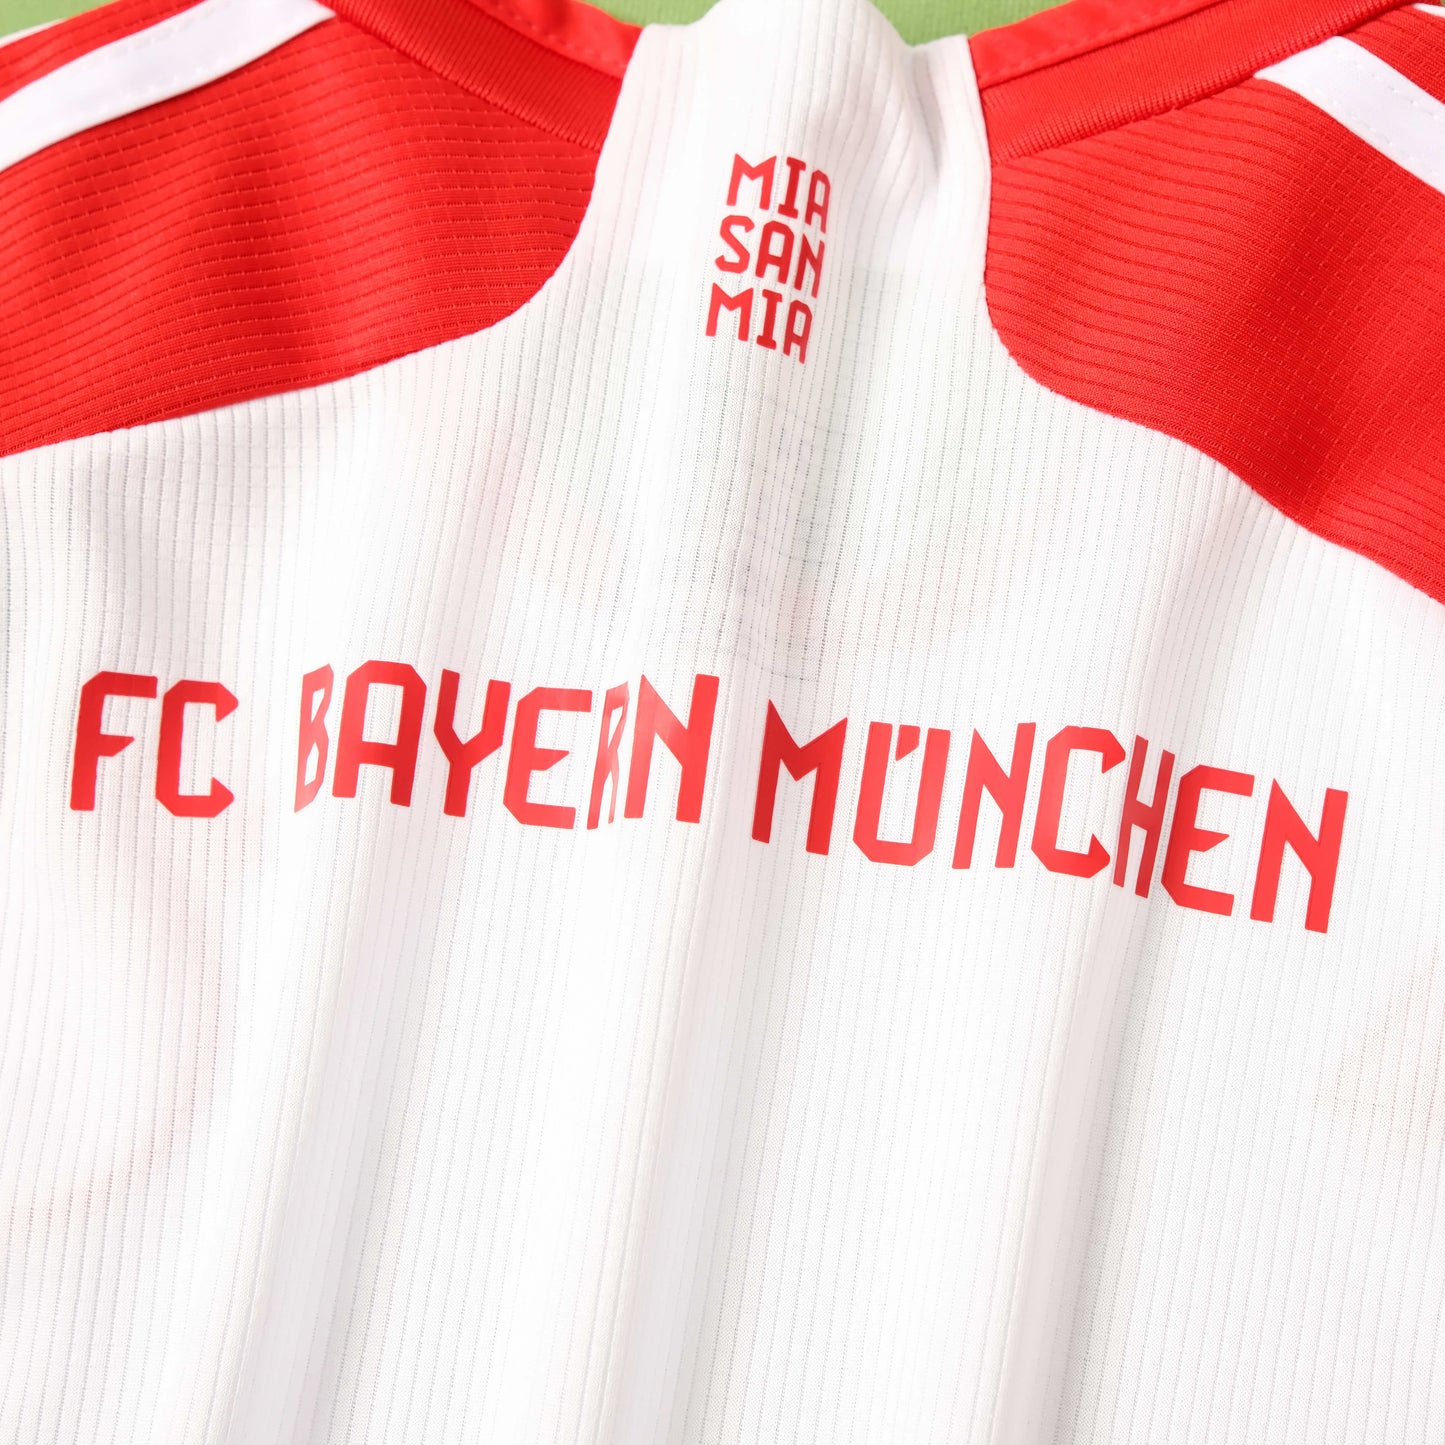 Bayern Munich 23/24 Kids Home Kit